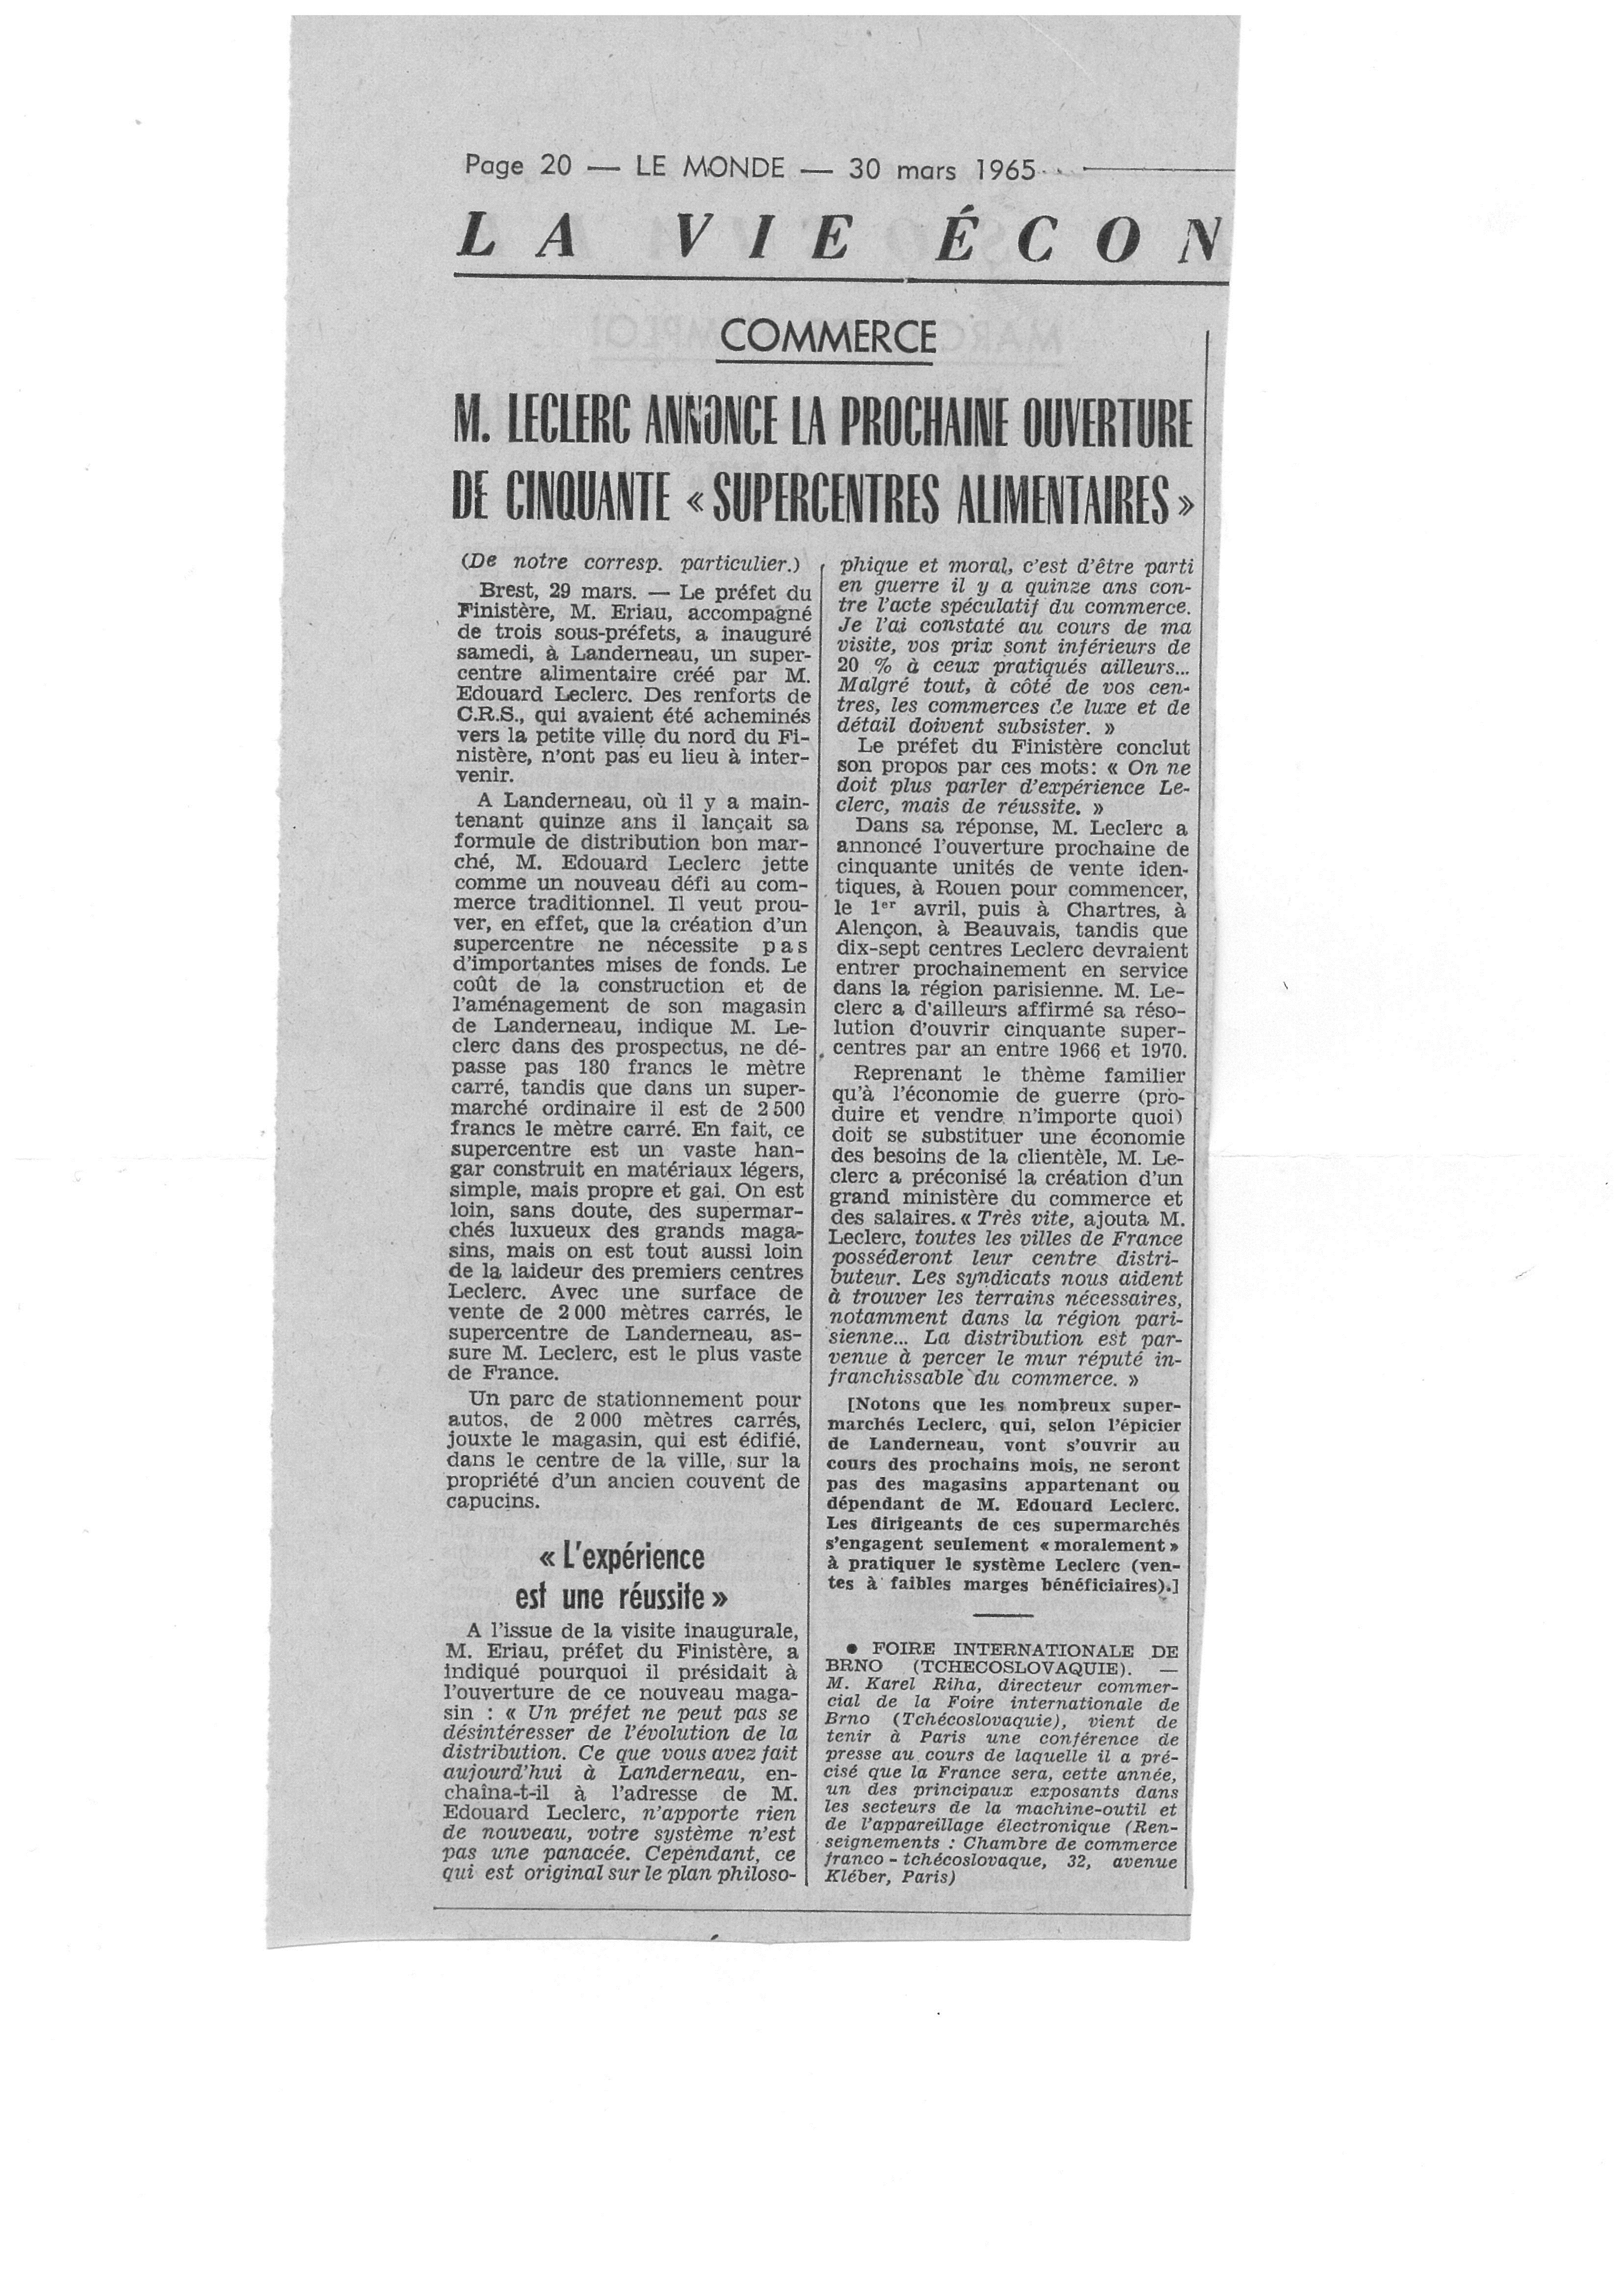 M. Leclerc annonce la prochaine ouverture de 50 'super-centres' alimentaires (Le Monde, 1965)